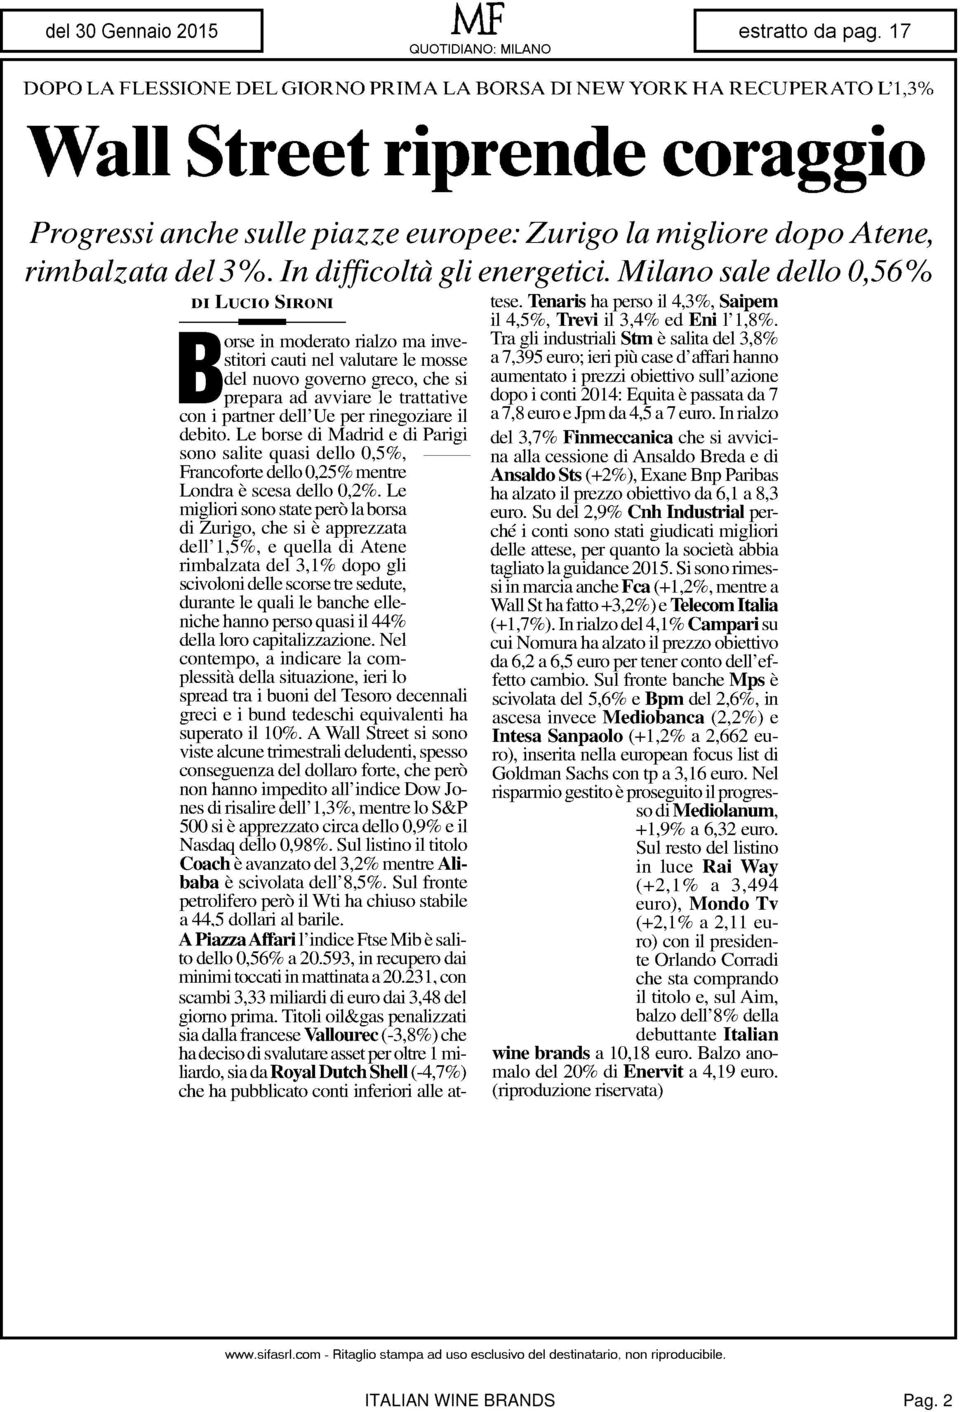 Milano sale dello 0,56% DI Lucio SIRONI Borse in moderato rialzo ma investitori cauti nel valutare le mosse del nuovo governo greco, che si prepara ad avviare le trattative con i partner dell'uè per